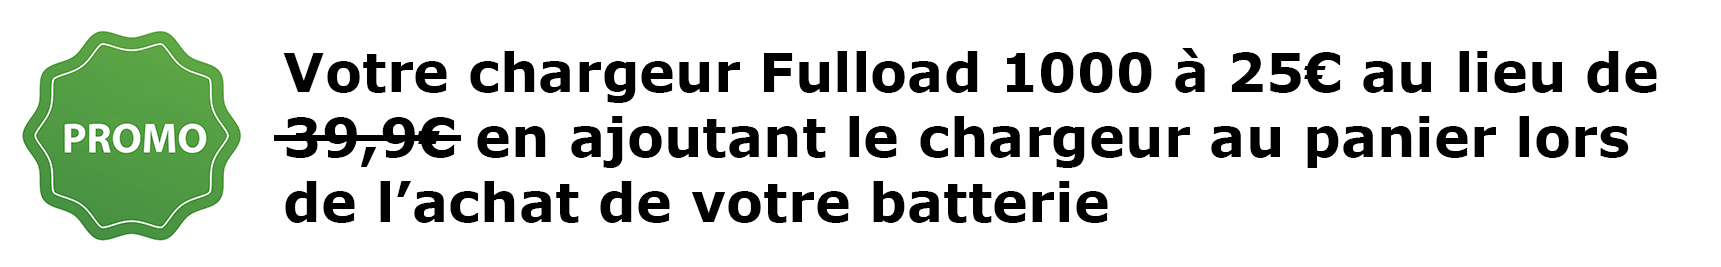 Batterie Moto FULBAT FTX9-BS GEL / YTX9-BS